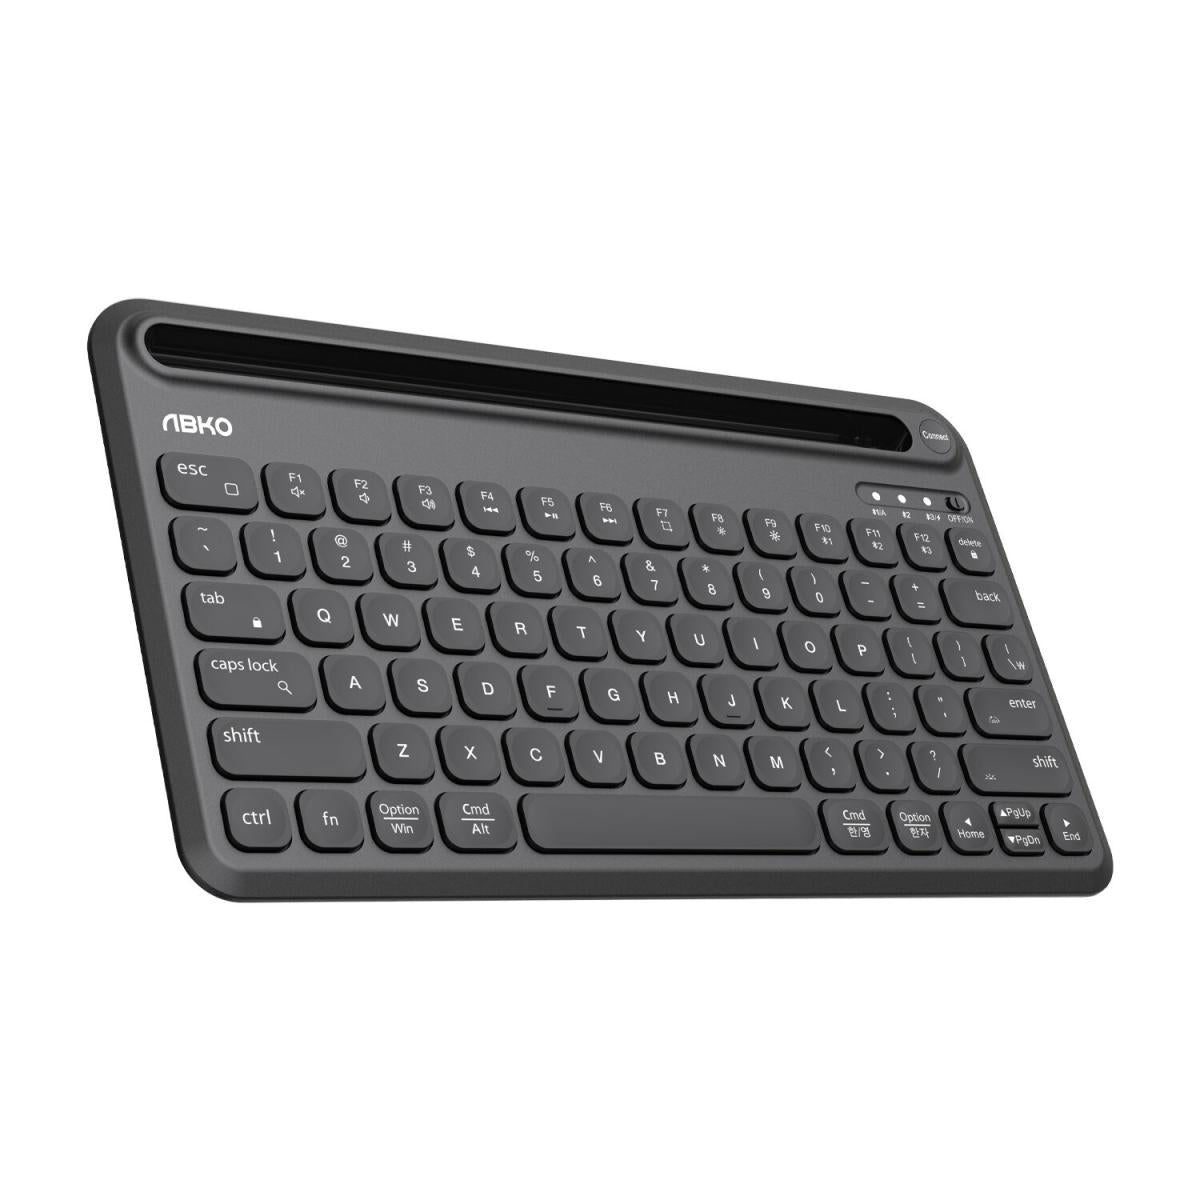 韓國 ABKO TOS250 多設備無線鍵盤 背光鍵盤 藍芽鍵盤 支持MacOS/iOS/Andriod/Windows